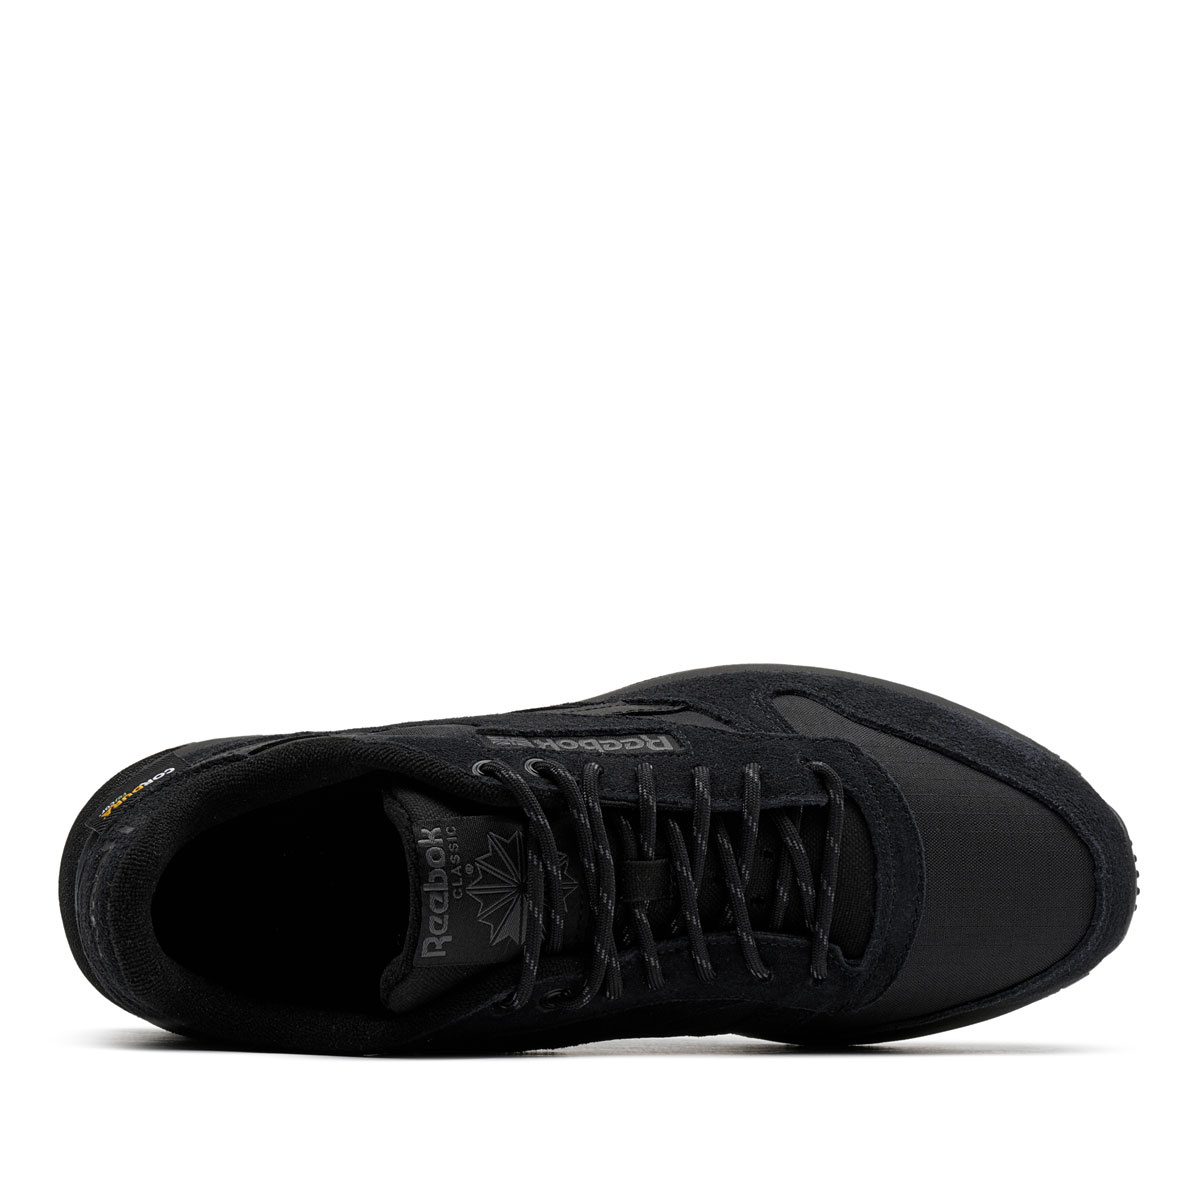 Reebok Classic Leather Мъжки спортни обувки GY1542